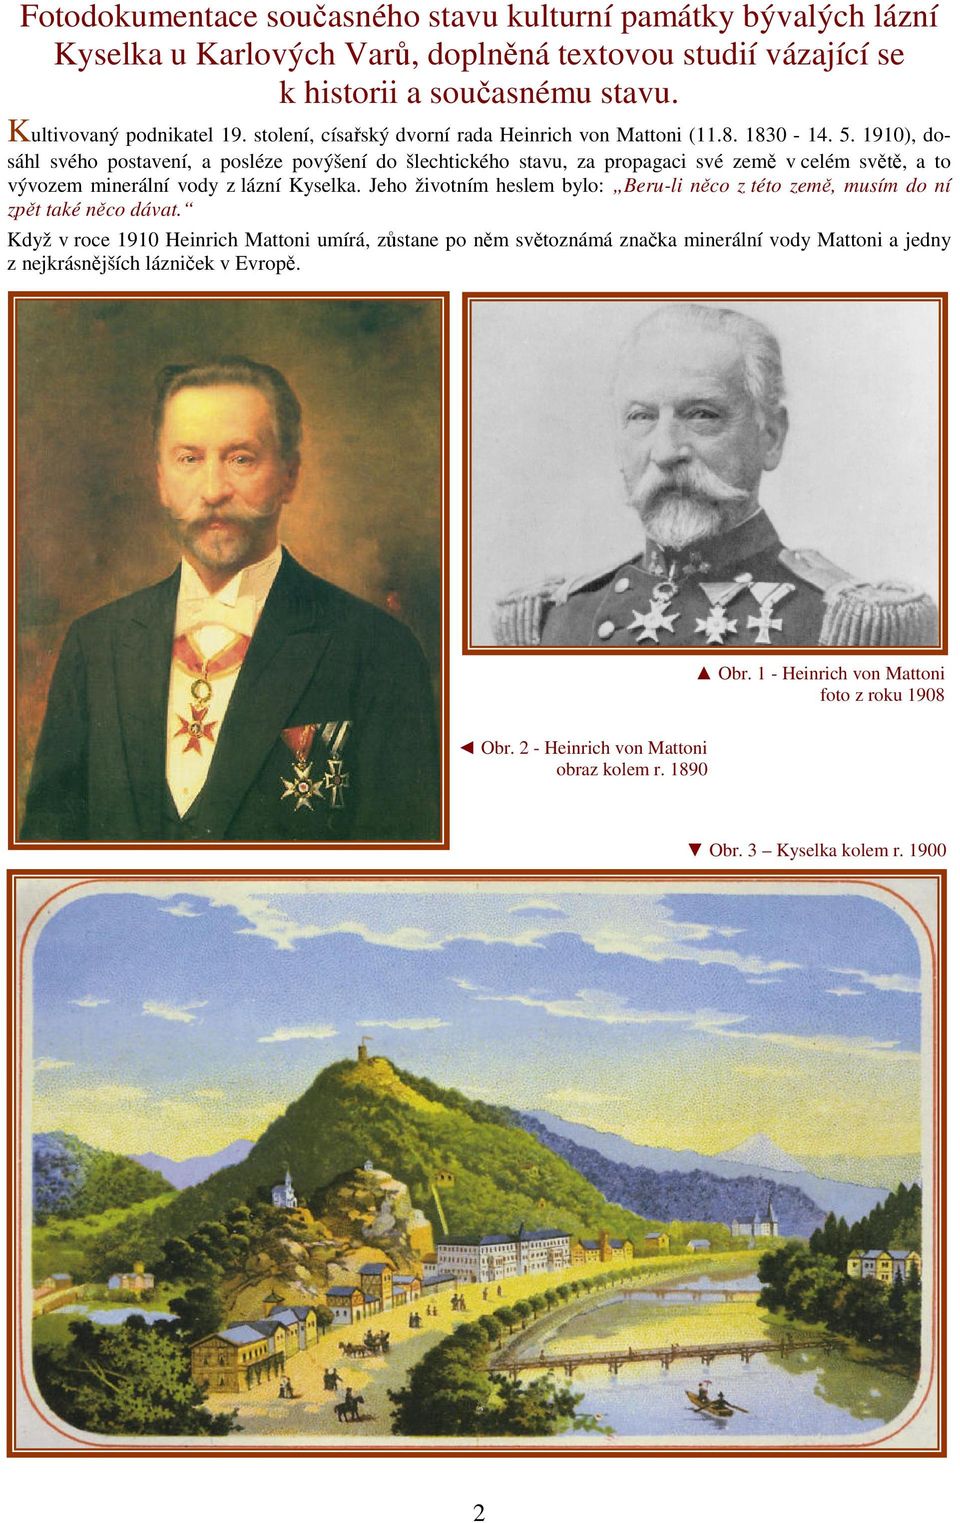 1910), dosáhl svého postavení, a posléze povýšení do šlechtického stavu, za propagaci své země v celém světě, a to vývozem minerální vody z lázní Kyselka.